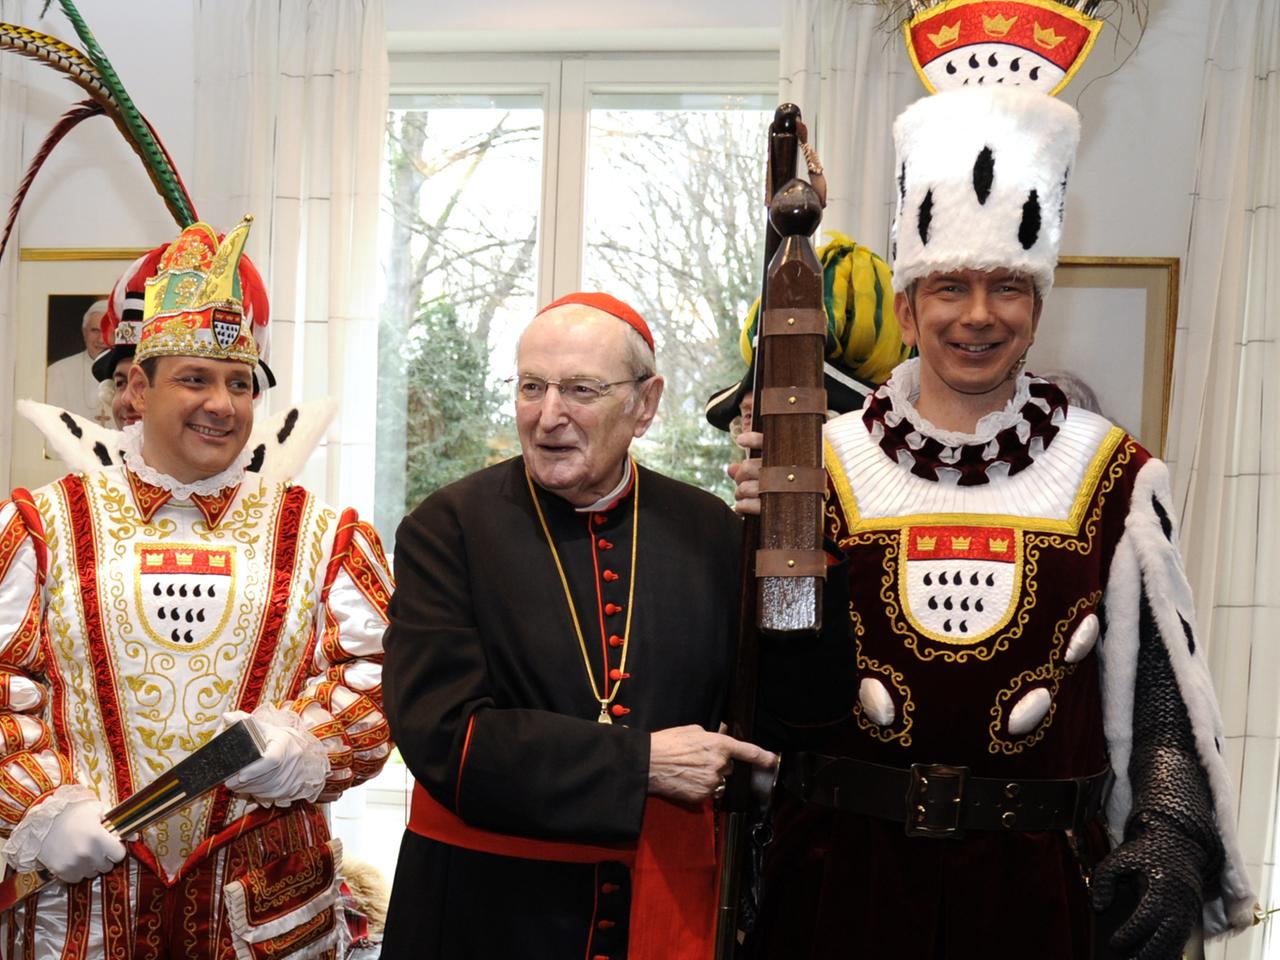 Joachim Kardinal Meisner (M.) empfängt am 25. Januar 2014 im Erzbischöflichen Haus in Köln das Kölner Karneval Dreigestirn der Session 2014.